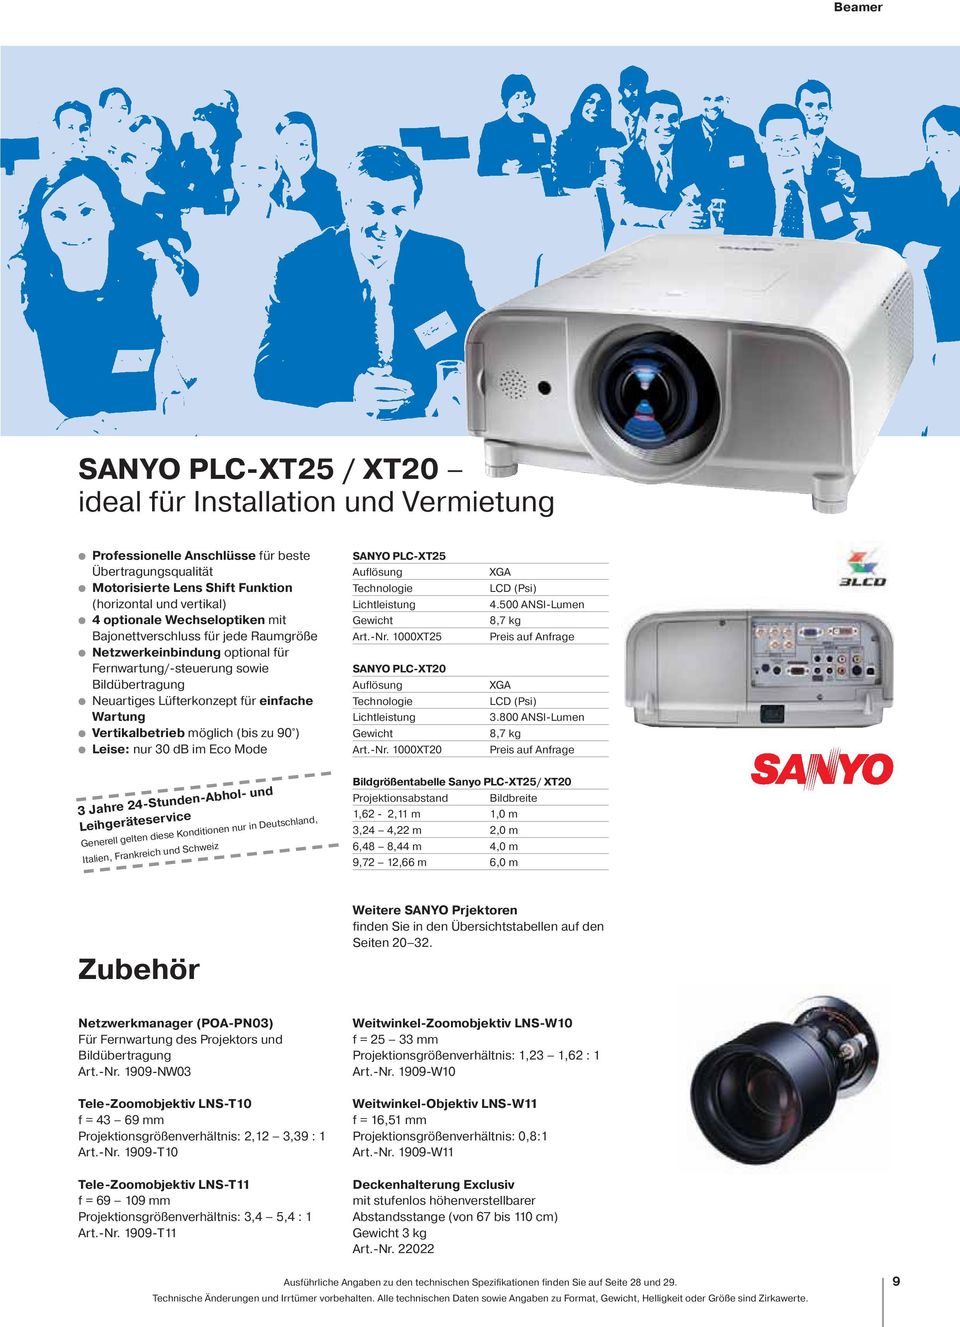 30 db im Eco Mode SANYO PLC-XT5 Art.-Nr. 000XT5 SANYO PLC-XT0 Art.-Nr. 000XT0 4.500 ANSI-Lumen 8,7 kg 3.